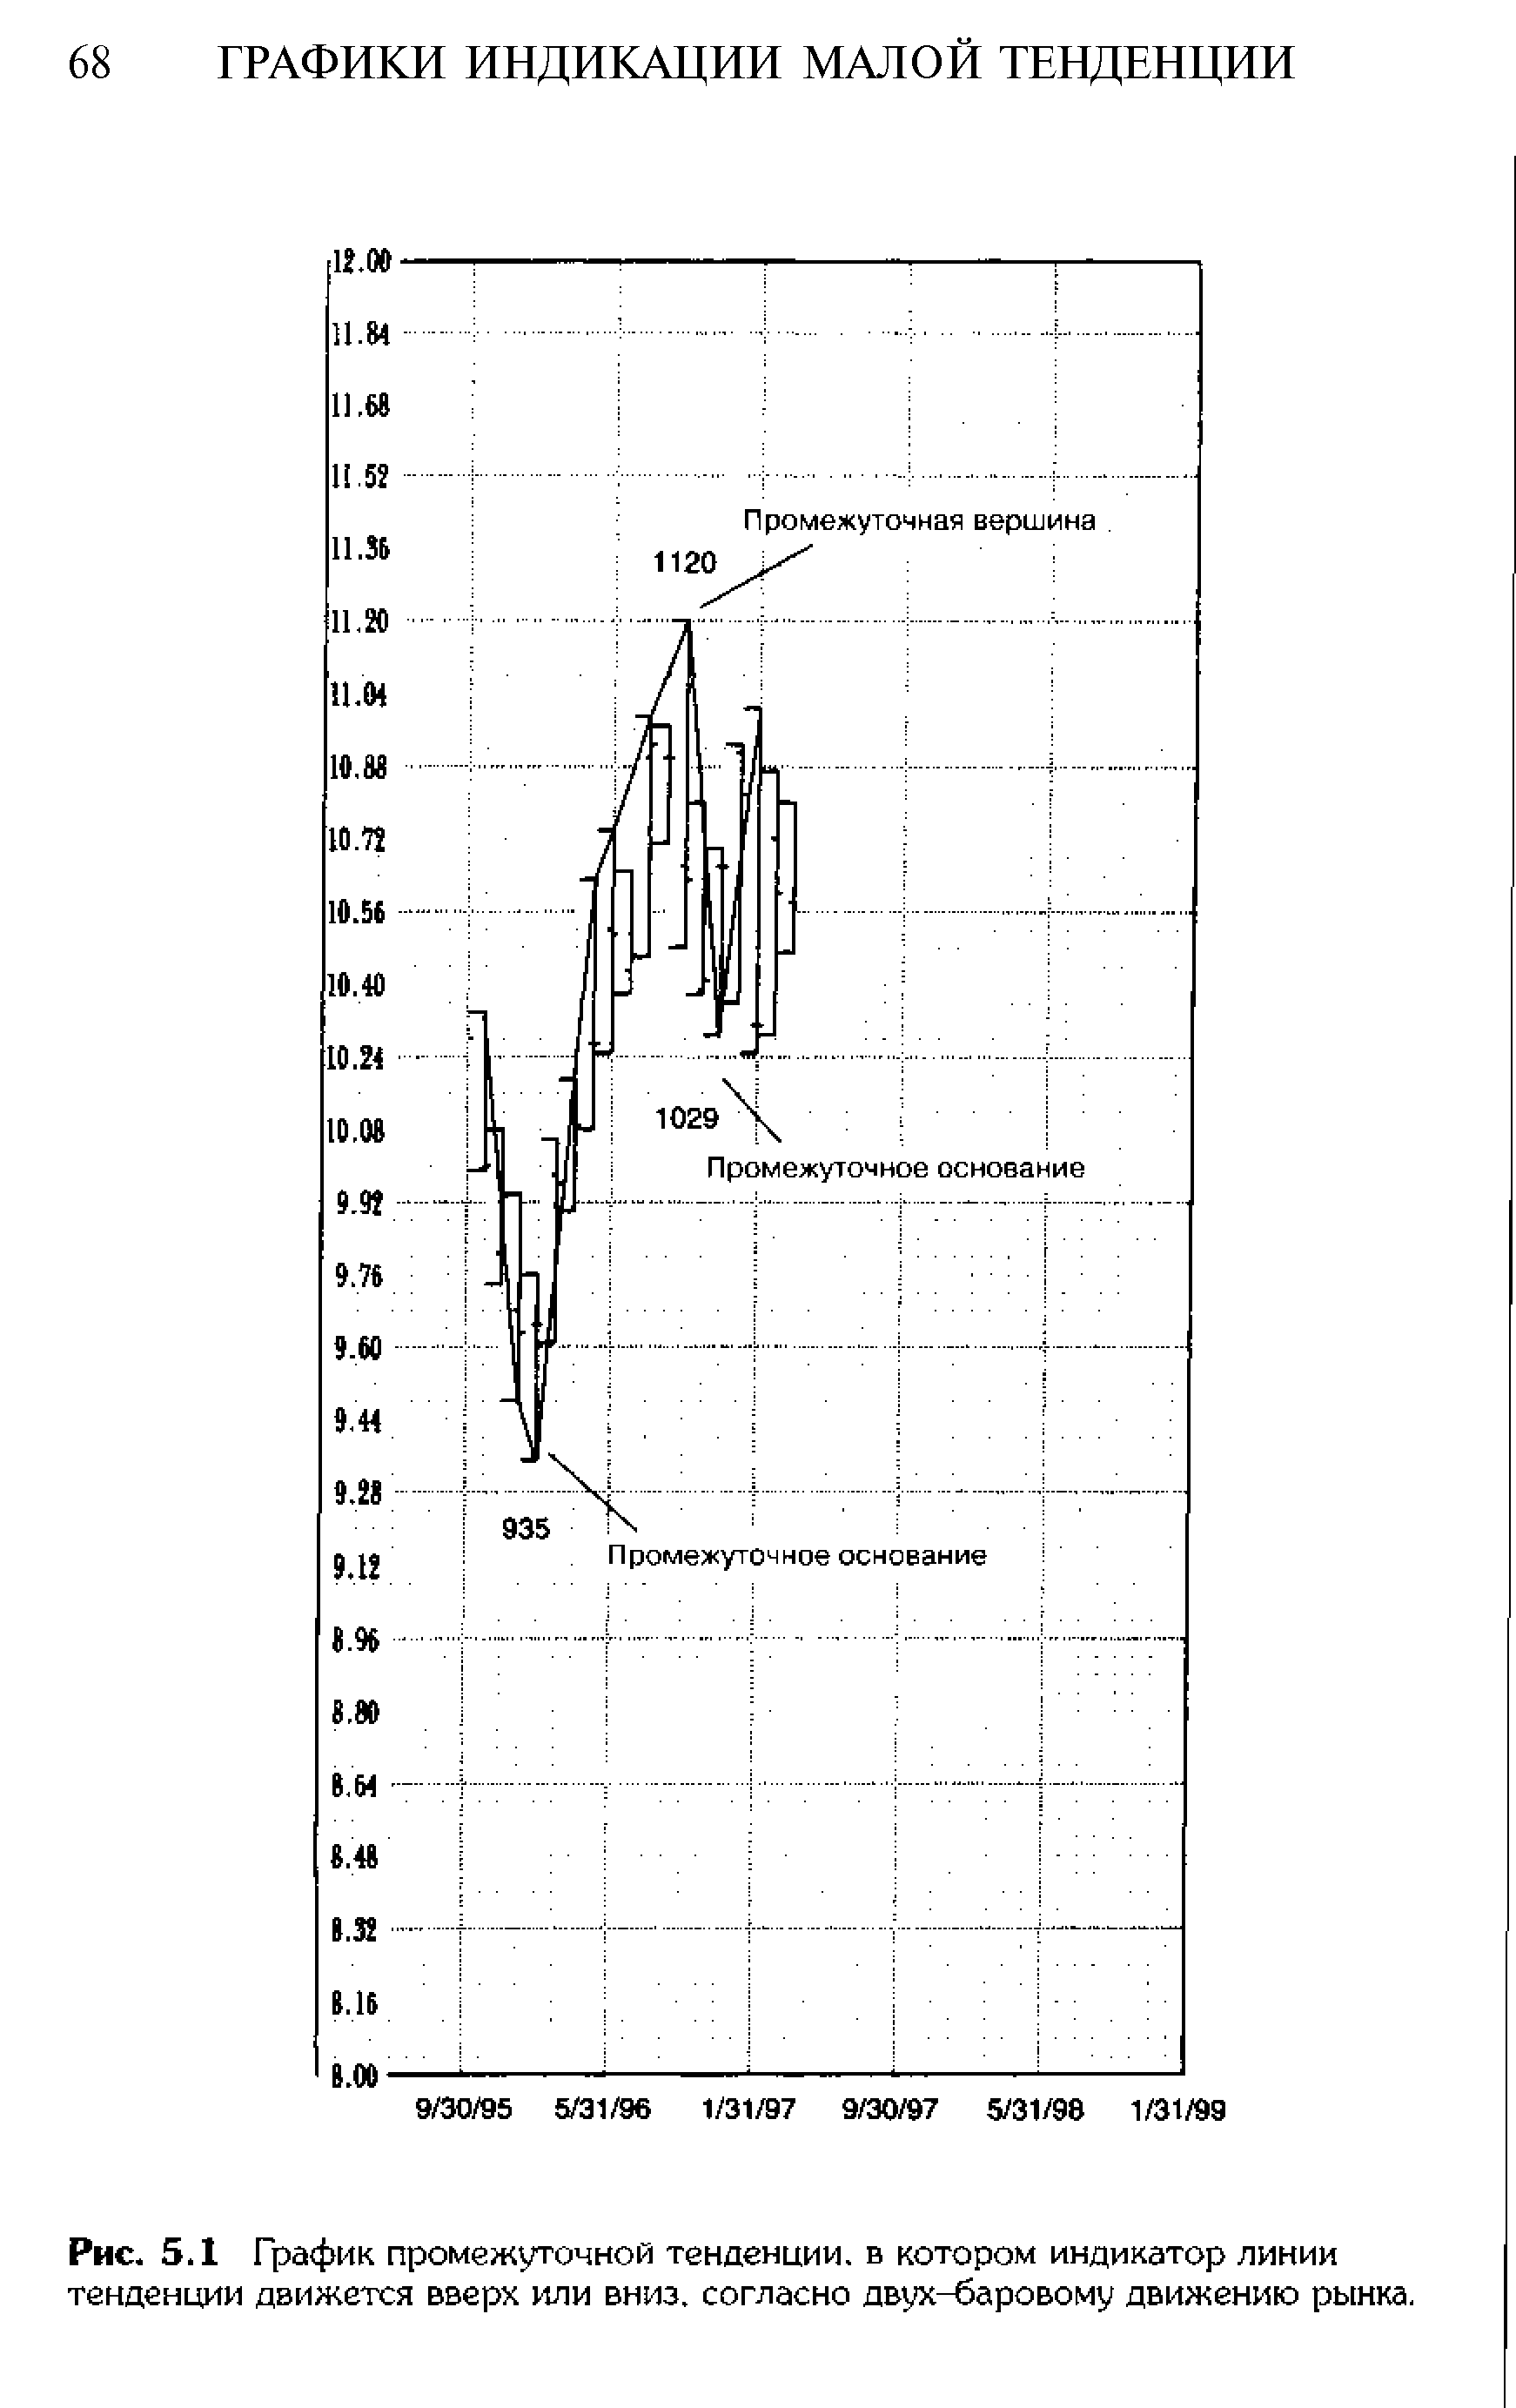 Рис. 5.1 График промежуточной тенденции, в котором индикатор линии тенденции движется вверх или вниз, согласно двух-баровому движению рынка.
